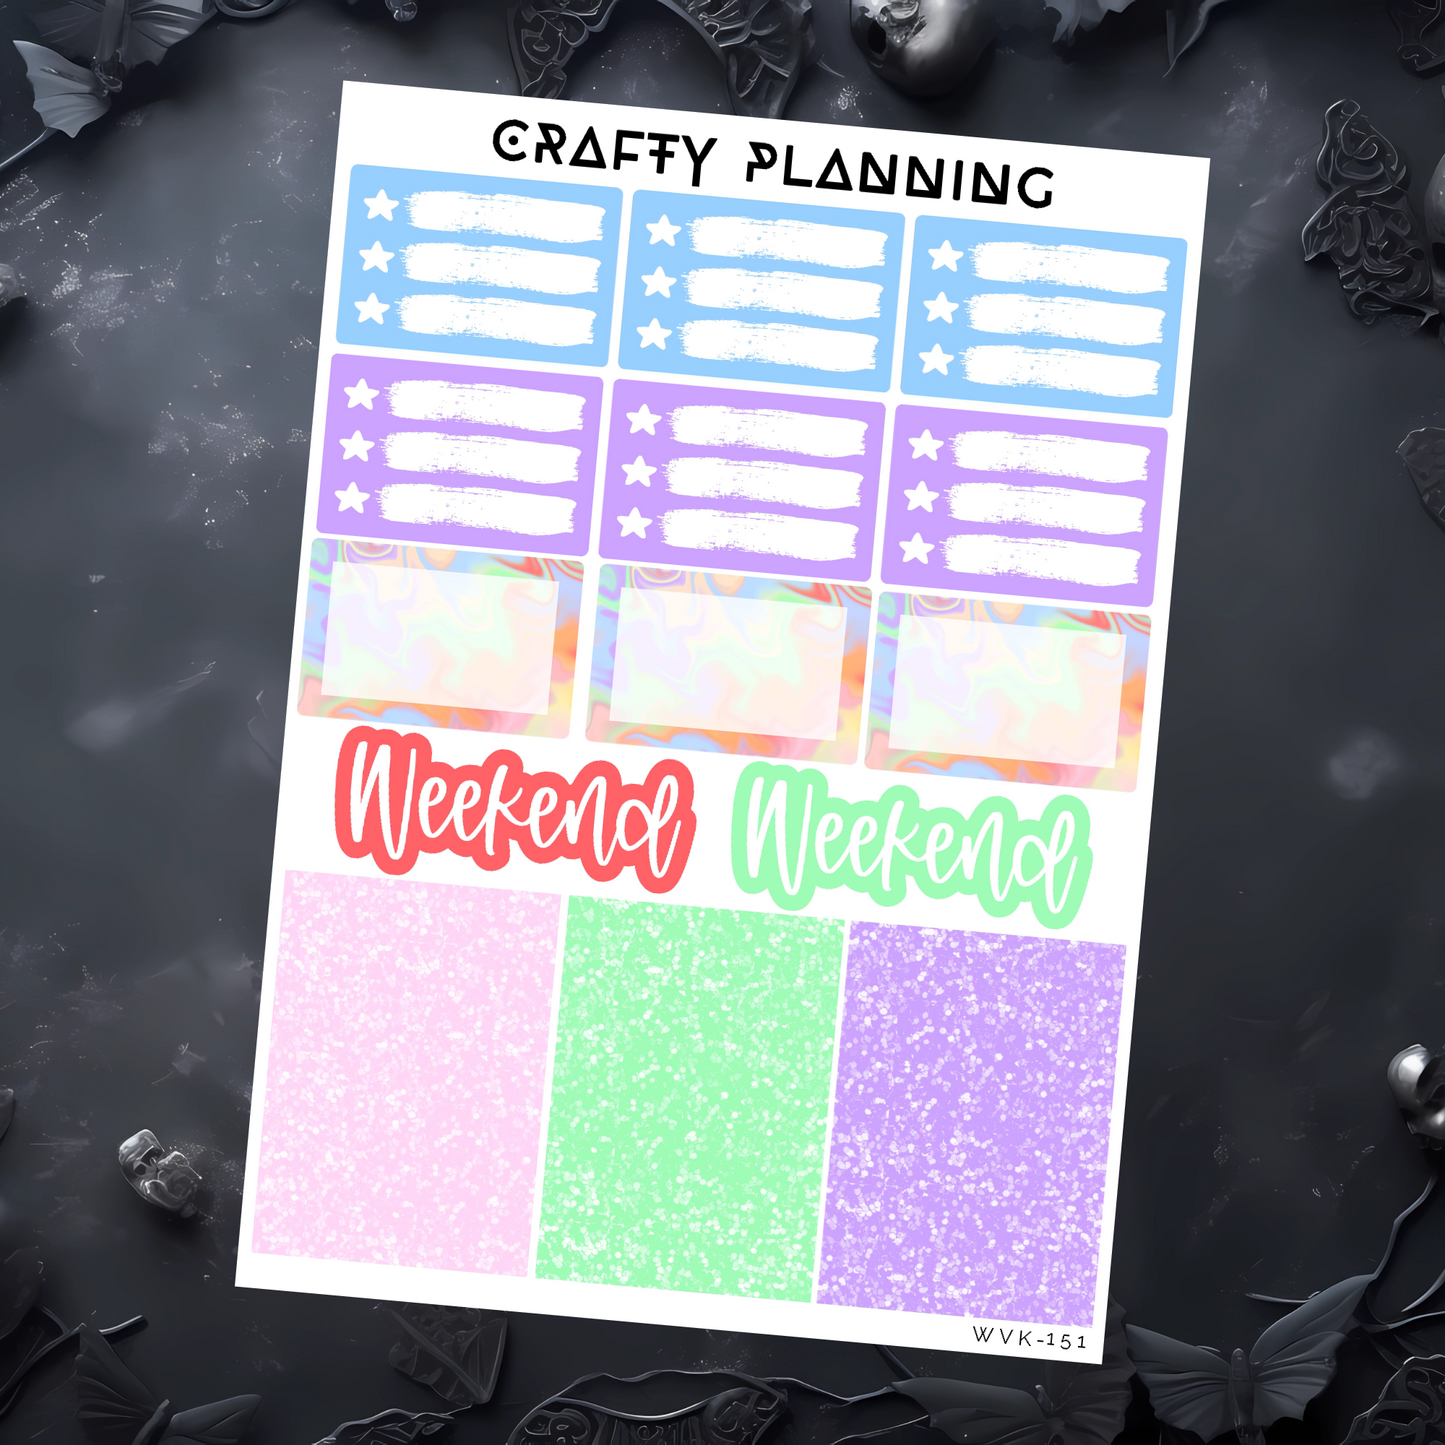 Pride Party - Weekly Vertical Planner Kit